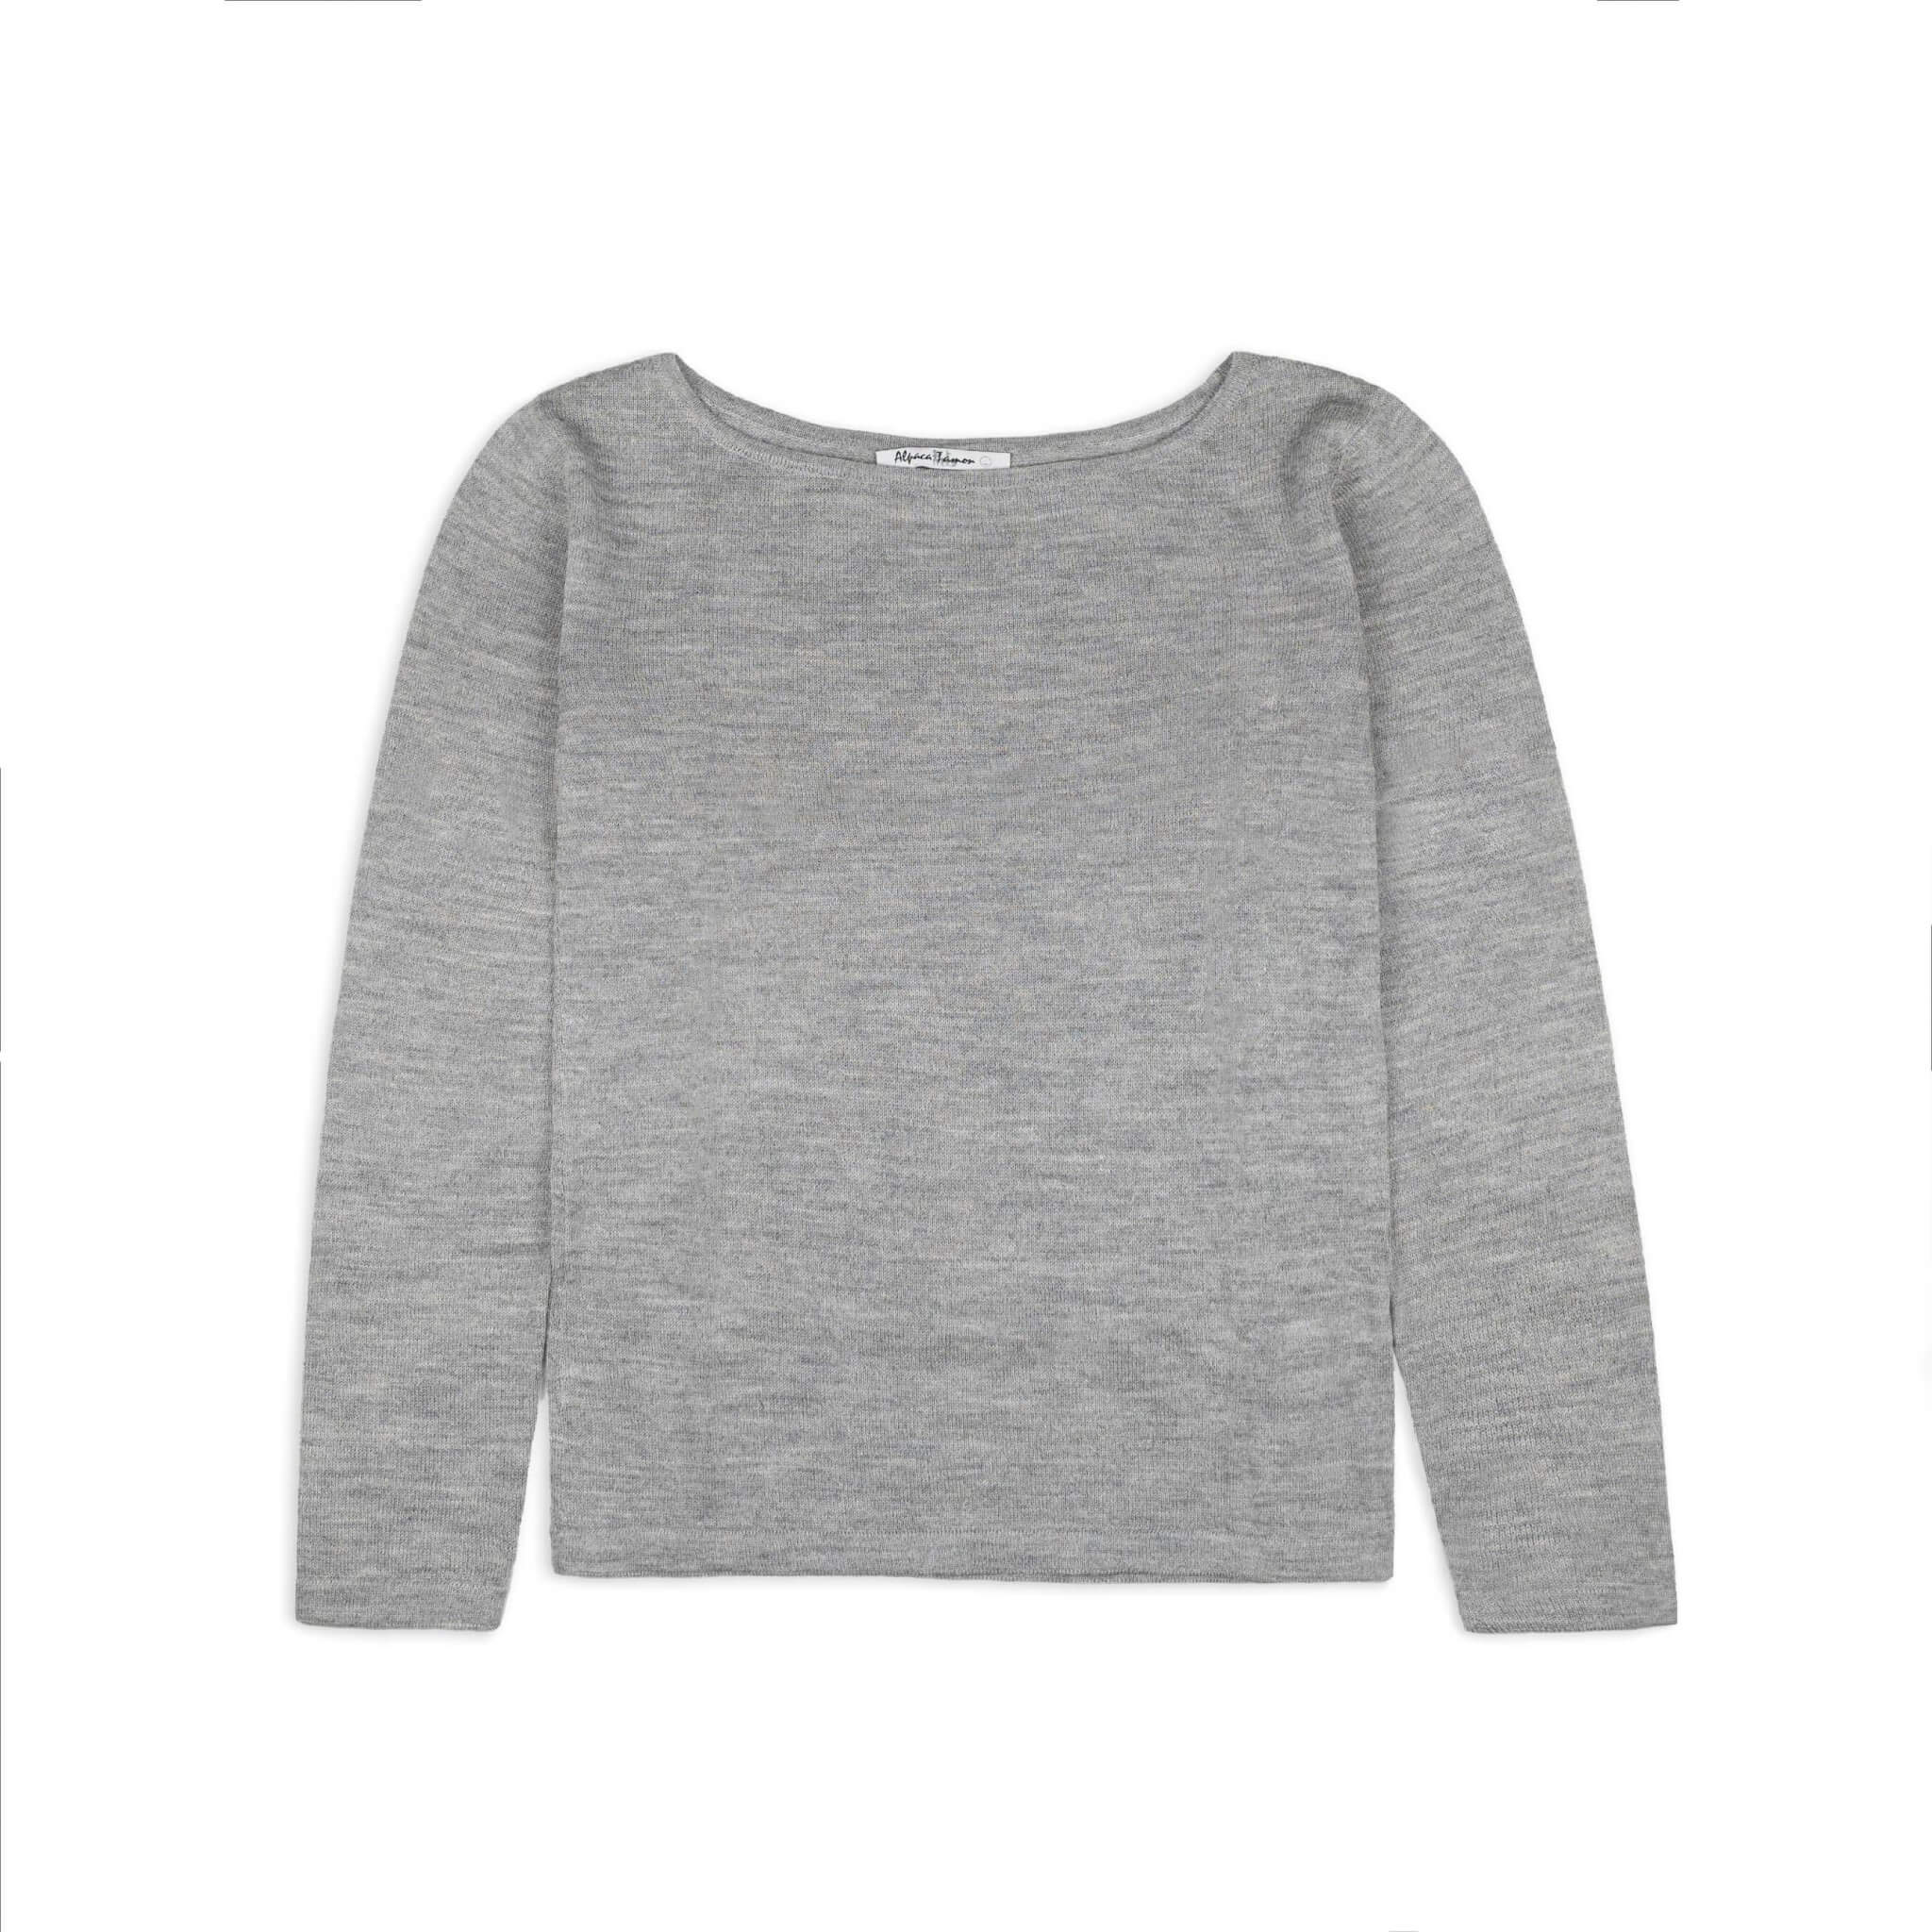 LUNA Alpaka Pullover für Damen von Alpakin in grau von vorne